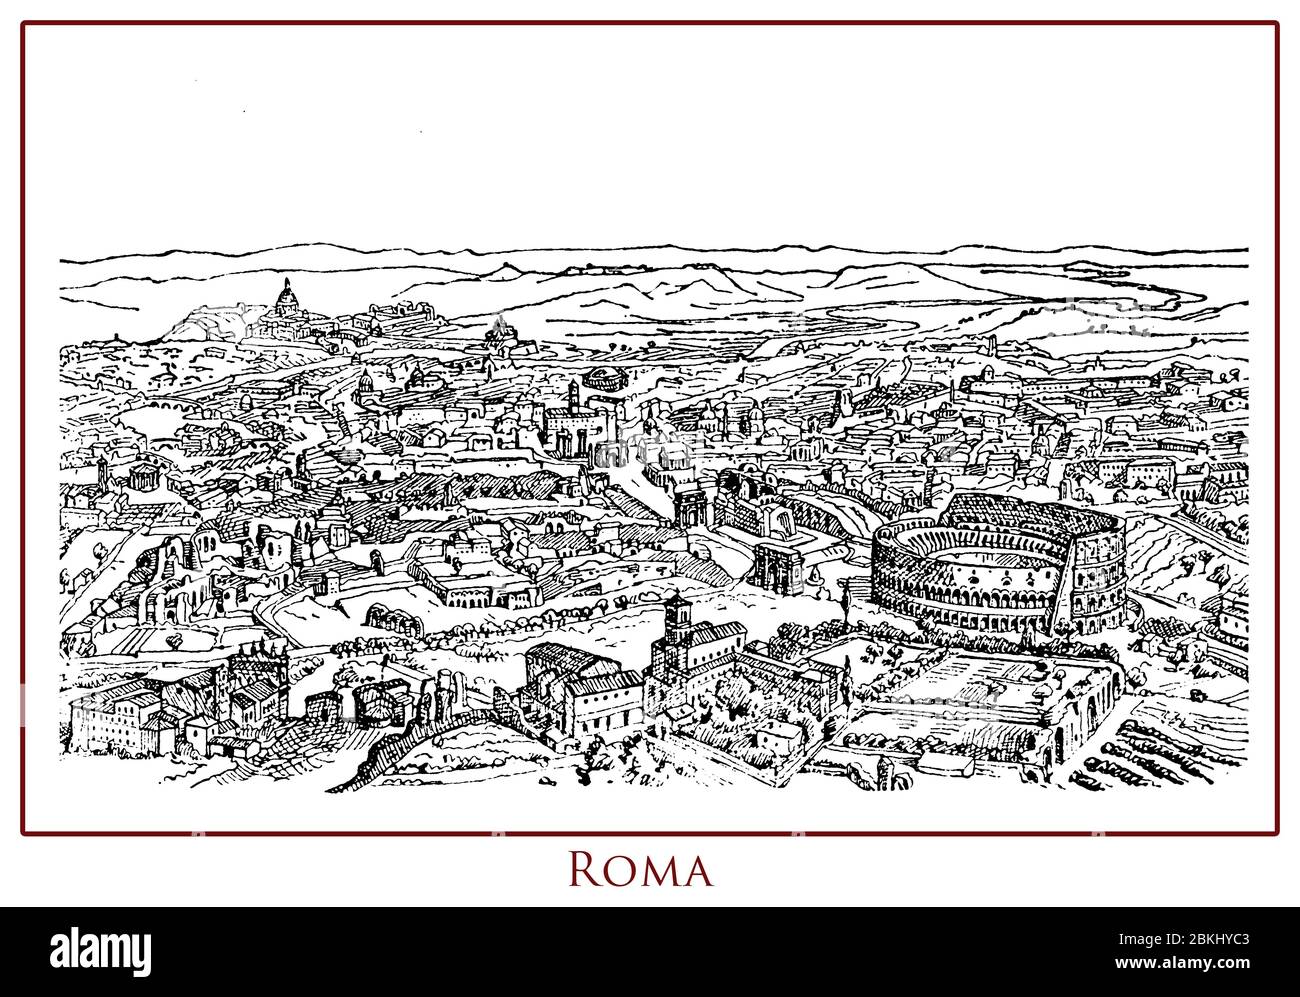 Vintage illustrierte Tabelle mit einem Panoramablick auf die Stadt Rom Hauptstadt von Italien am Tiber Ufer, reich an Geschichte, Architektur, Kunst und antiken Monumenten wie das Kolosseum Stockfoto